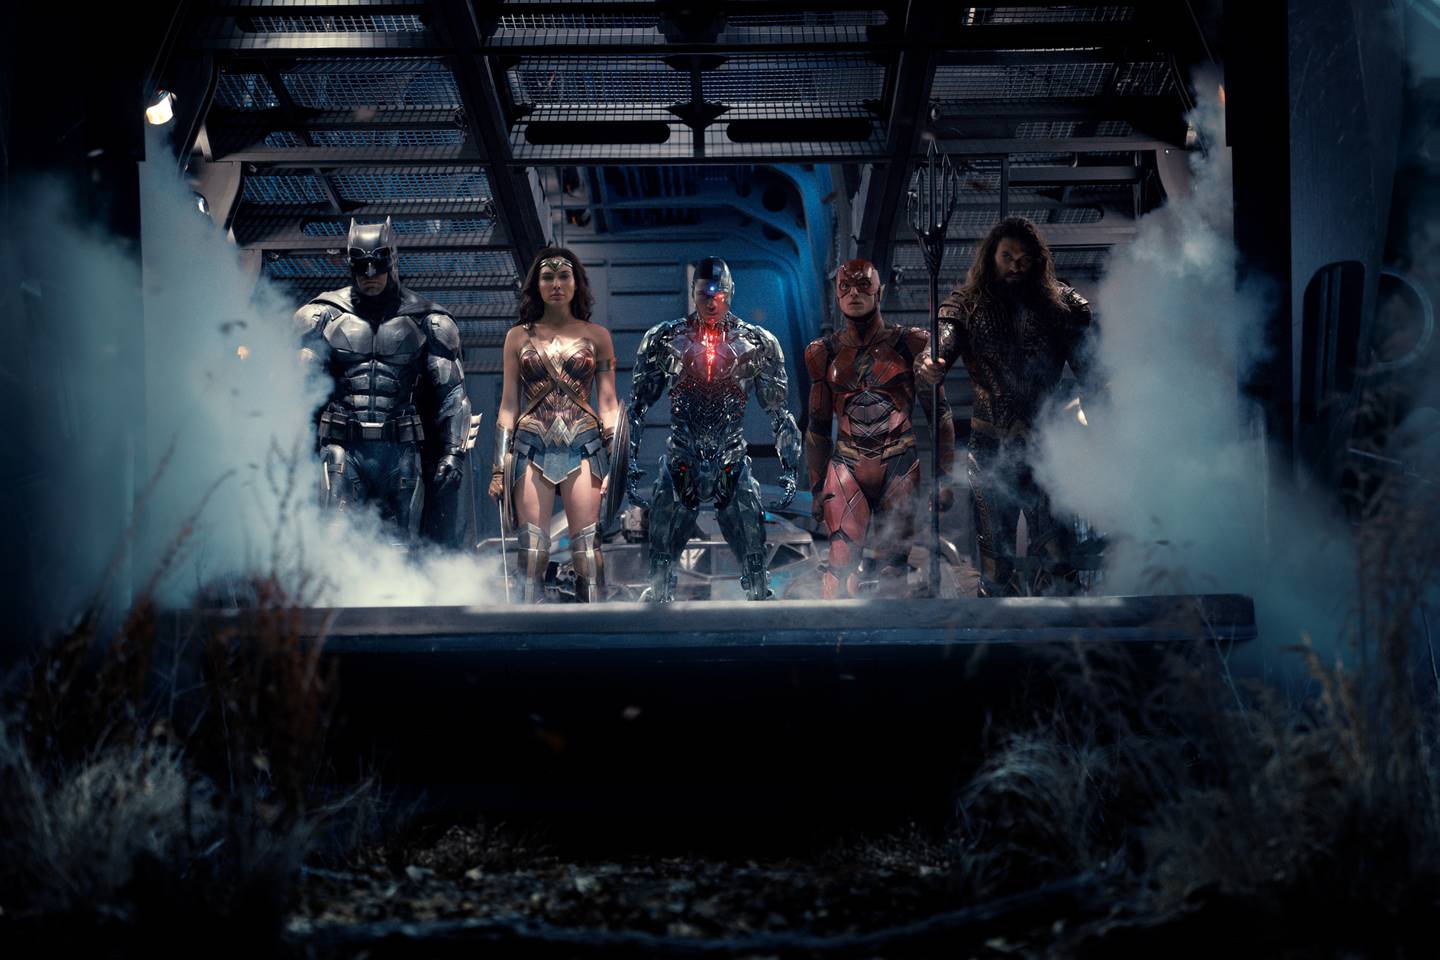 Storfilmen om Justice League innfridde ikke etter forventningene da den kom på kino i 2017, men da Zack Snyders opprinnelige versjon kom på HBO Max i 2021 viste den seg å være en atskillig bedre film i denne genren.